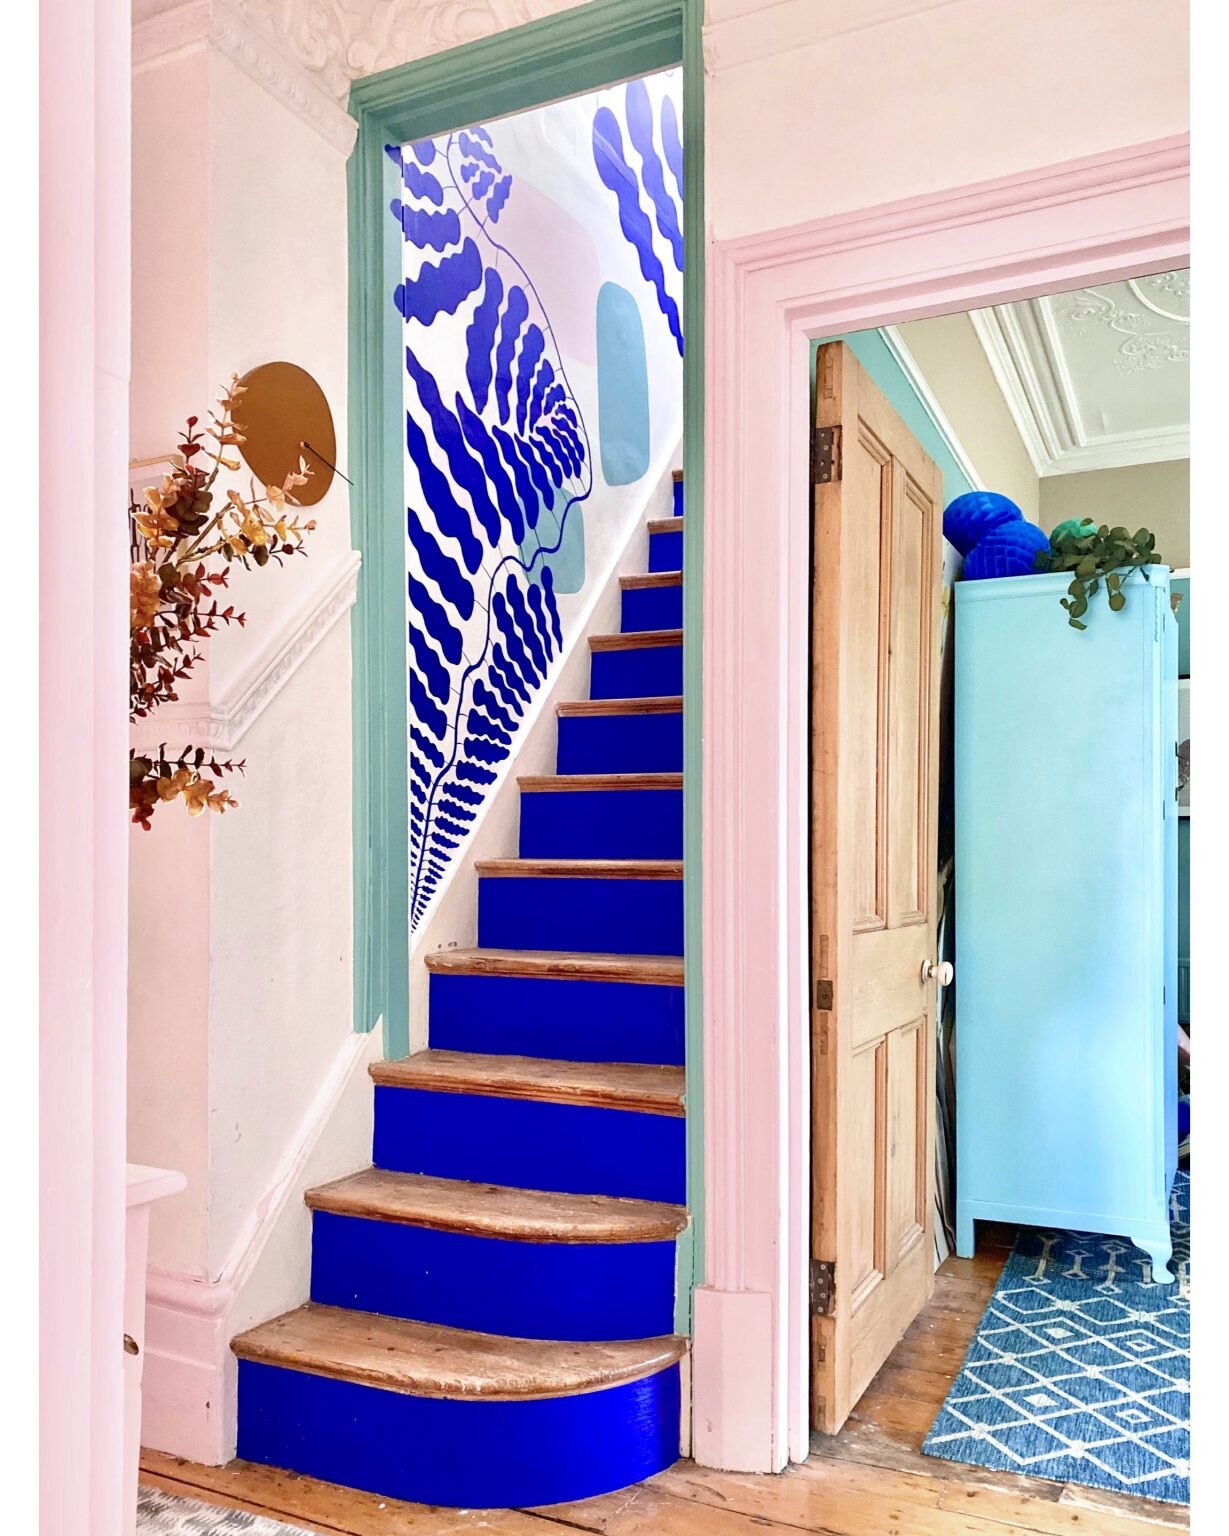 anna-jacobs-house-tour-blue-mural-staircase-1229x1536-1.jpg